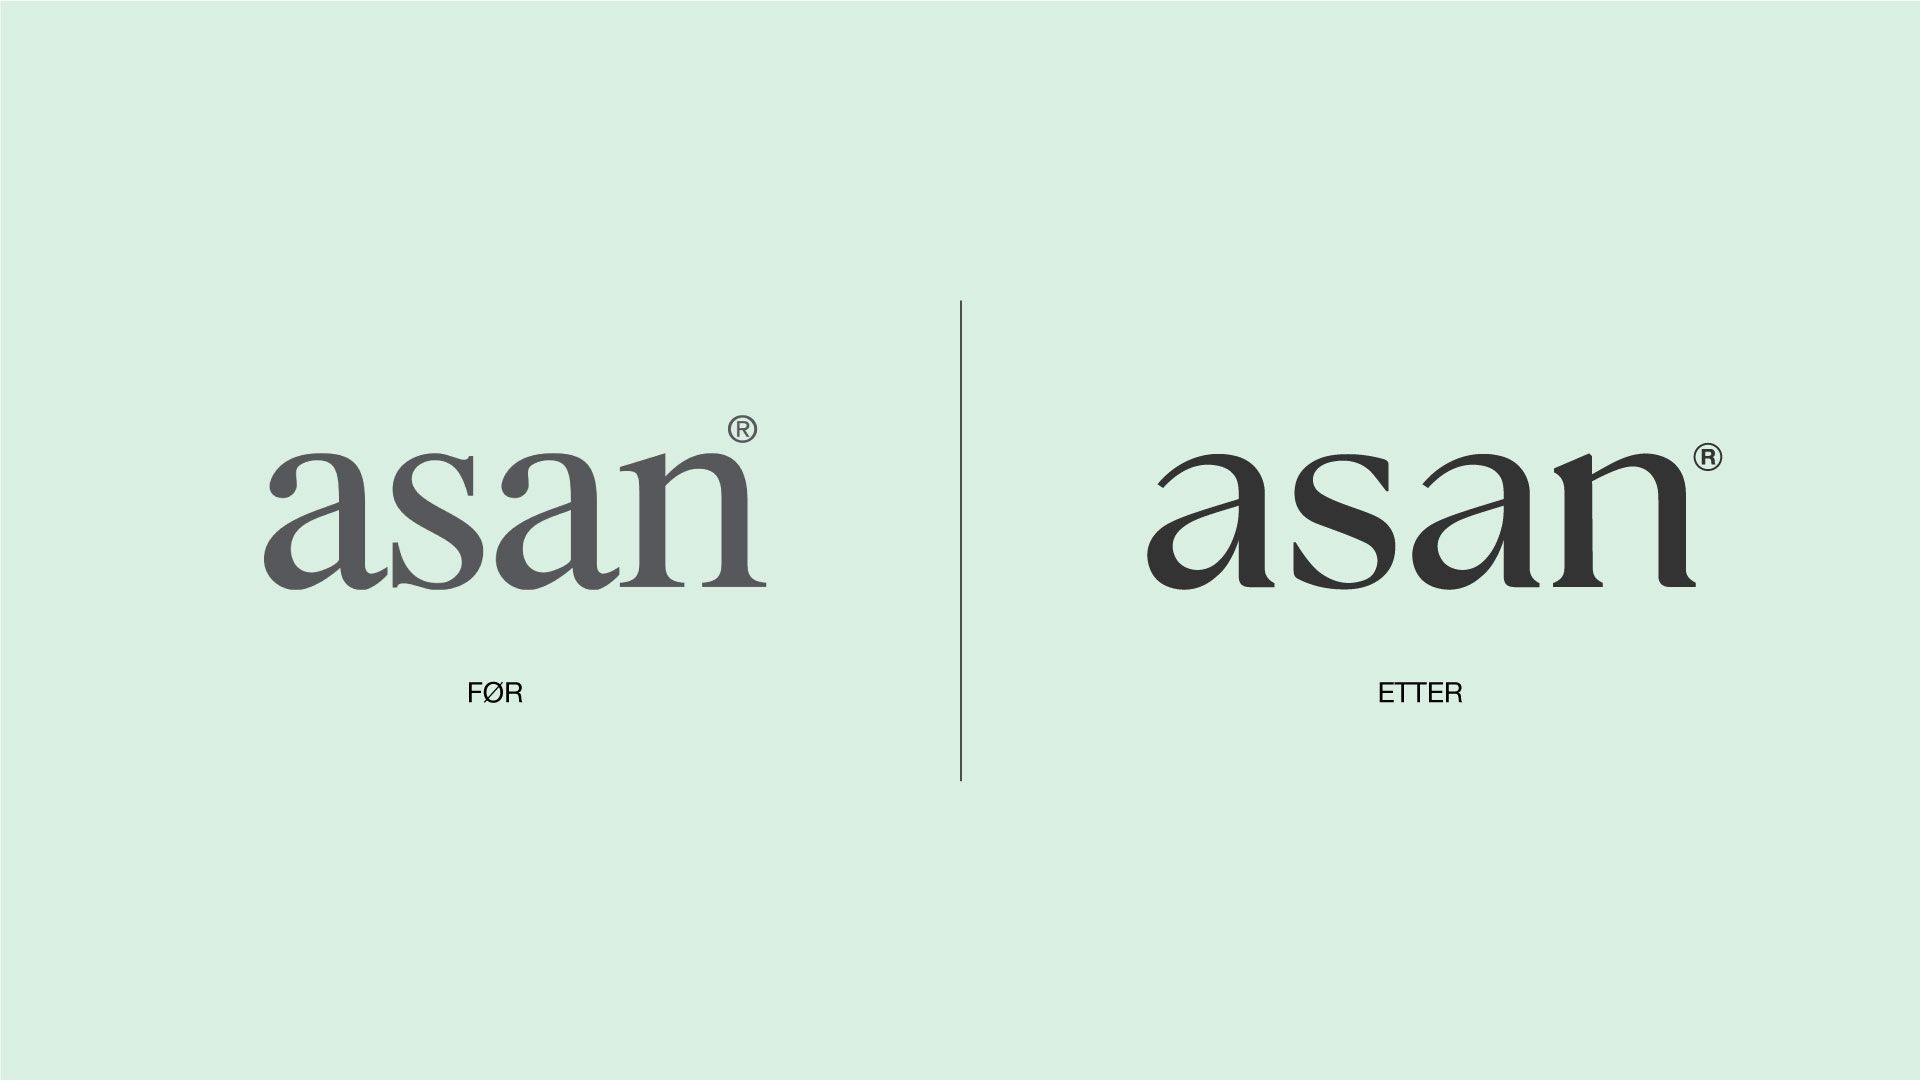 asan-logo-for-etter-redesign-grid-branding